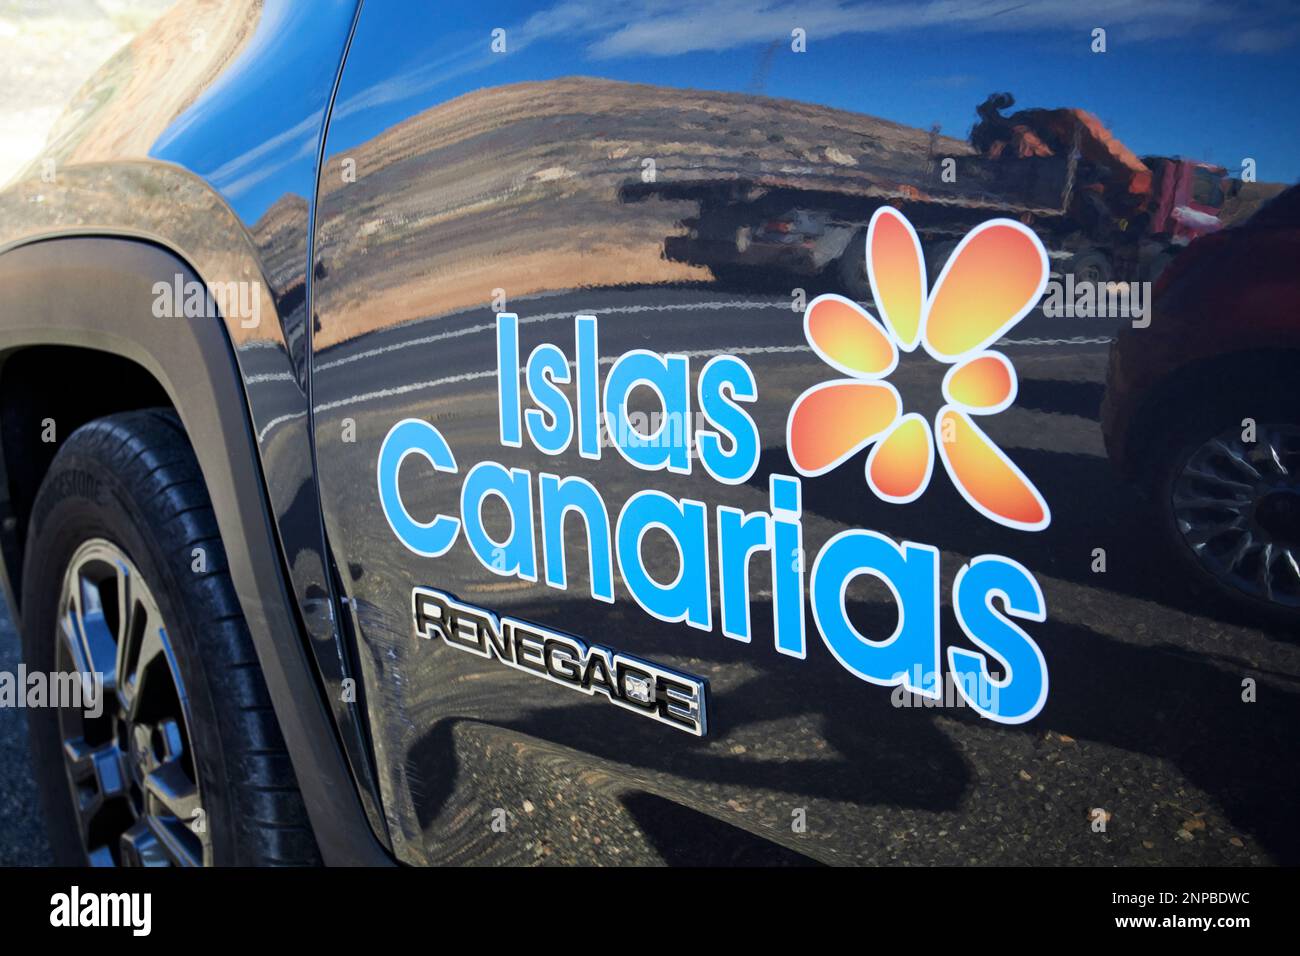 Jeep-Mietwagen mit isla canarias-Logo der Firma Cabera medina Lanzarote, Kanarische Inseln, Spanien Stockfoto